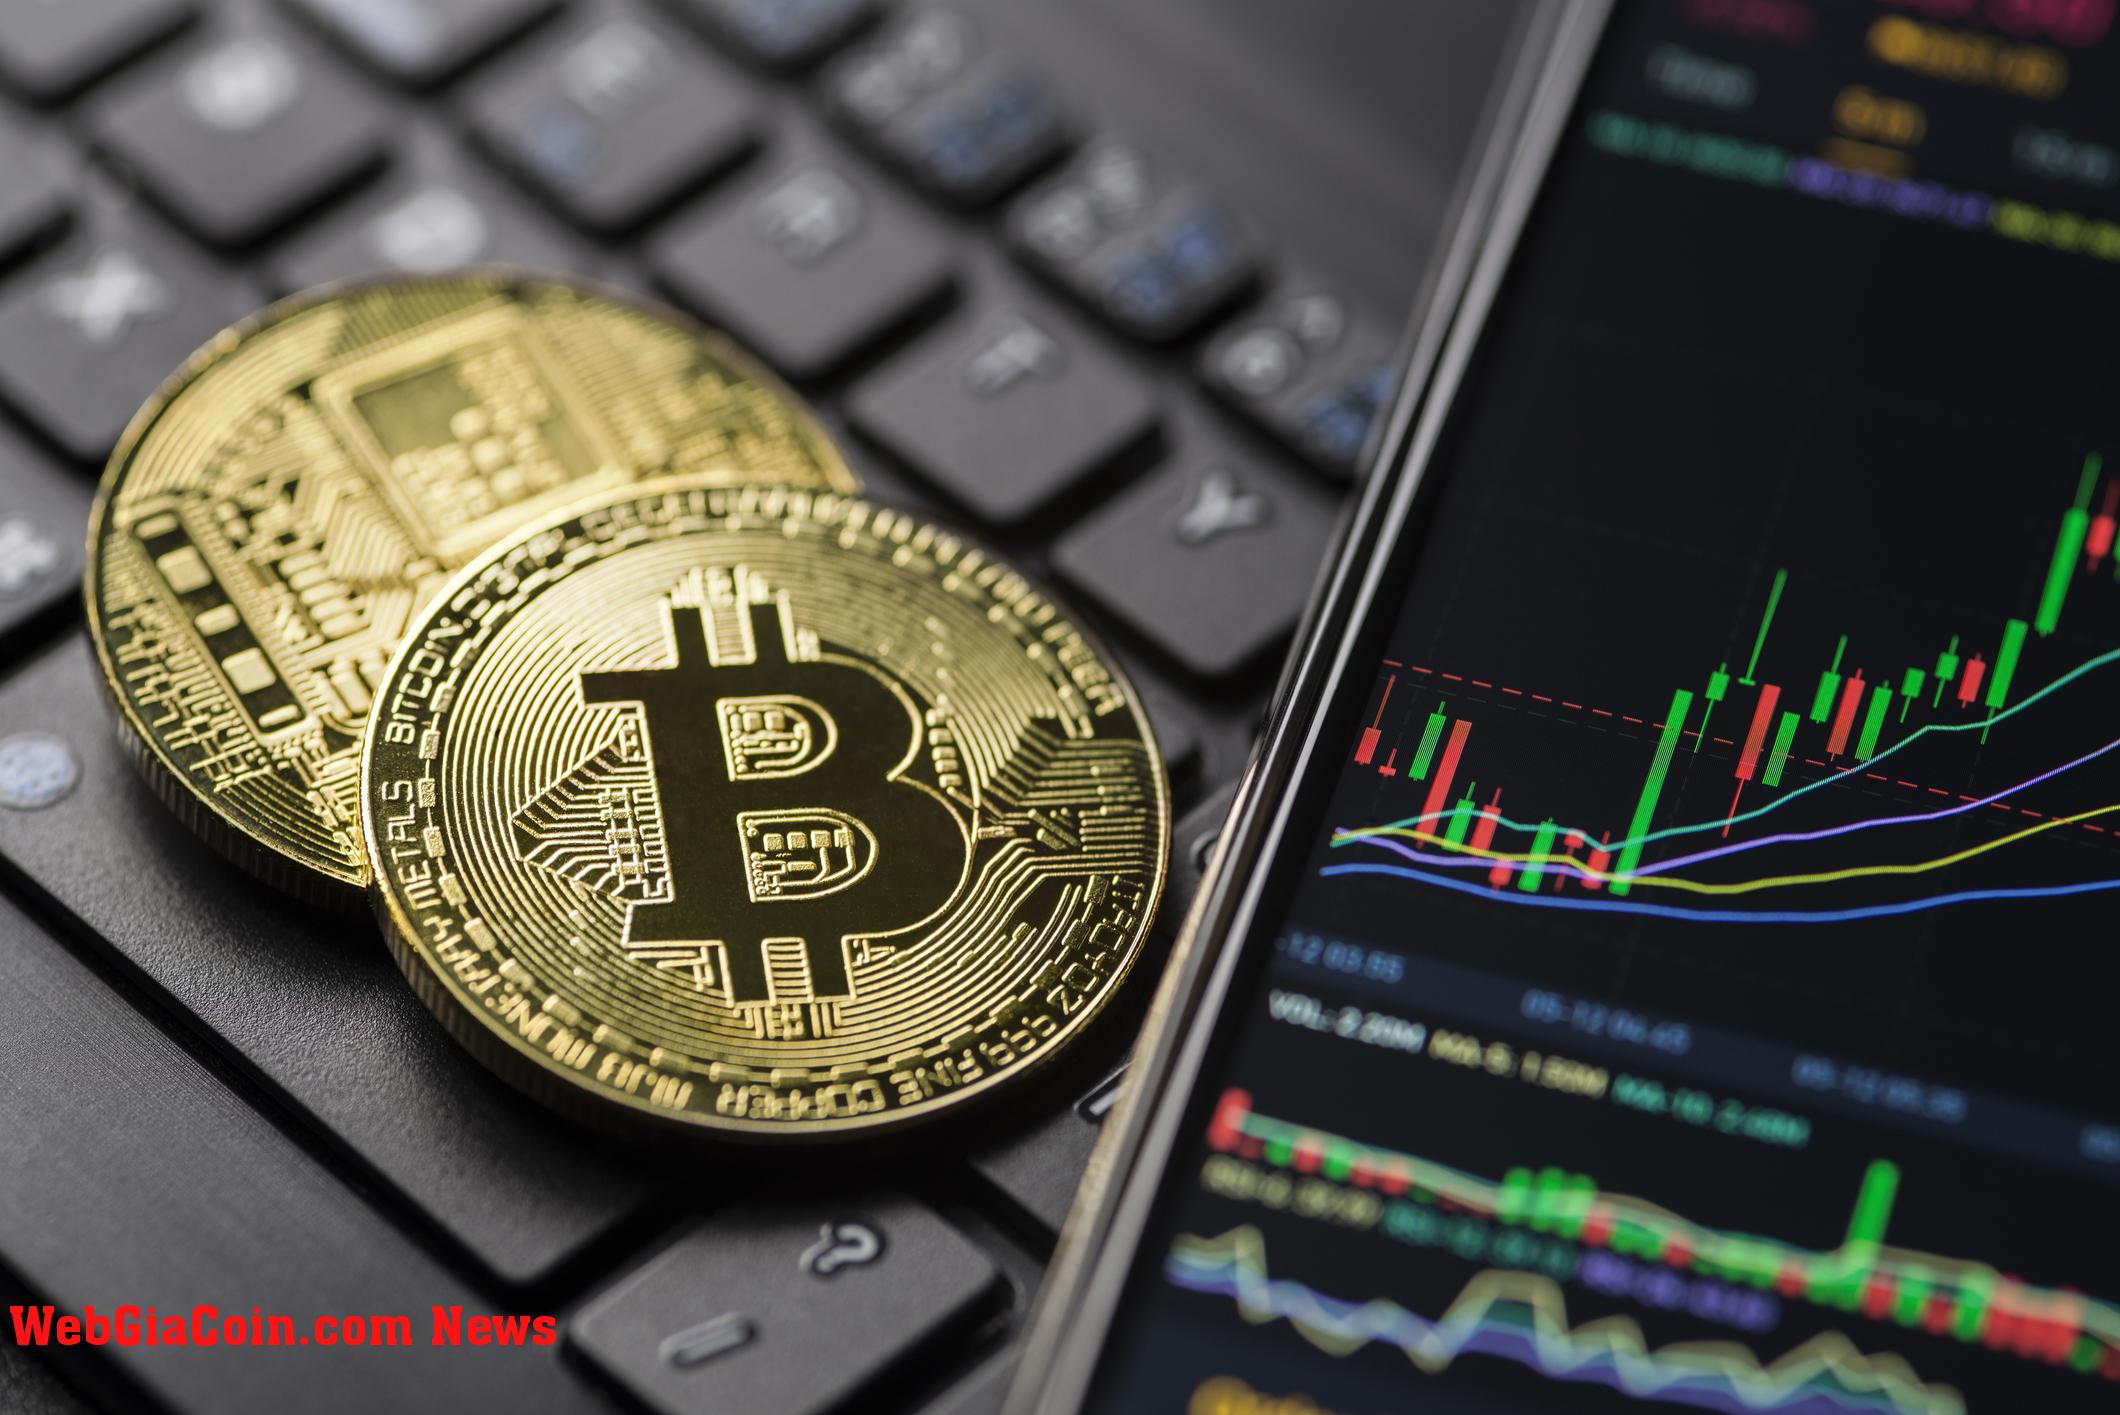 Bitcoin bị sụt giảm lớn trên BitMEX, đợt tăng giá đã kết thúc chưa?